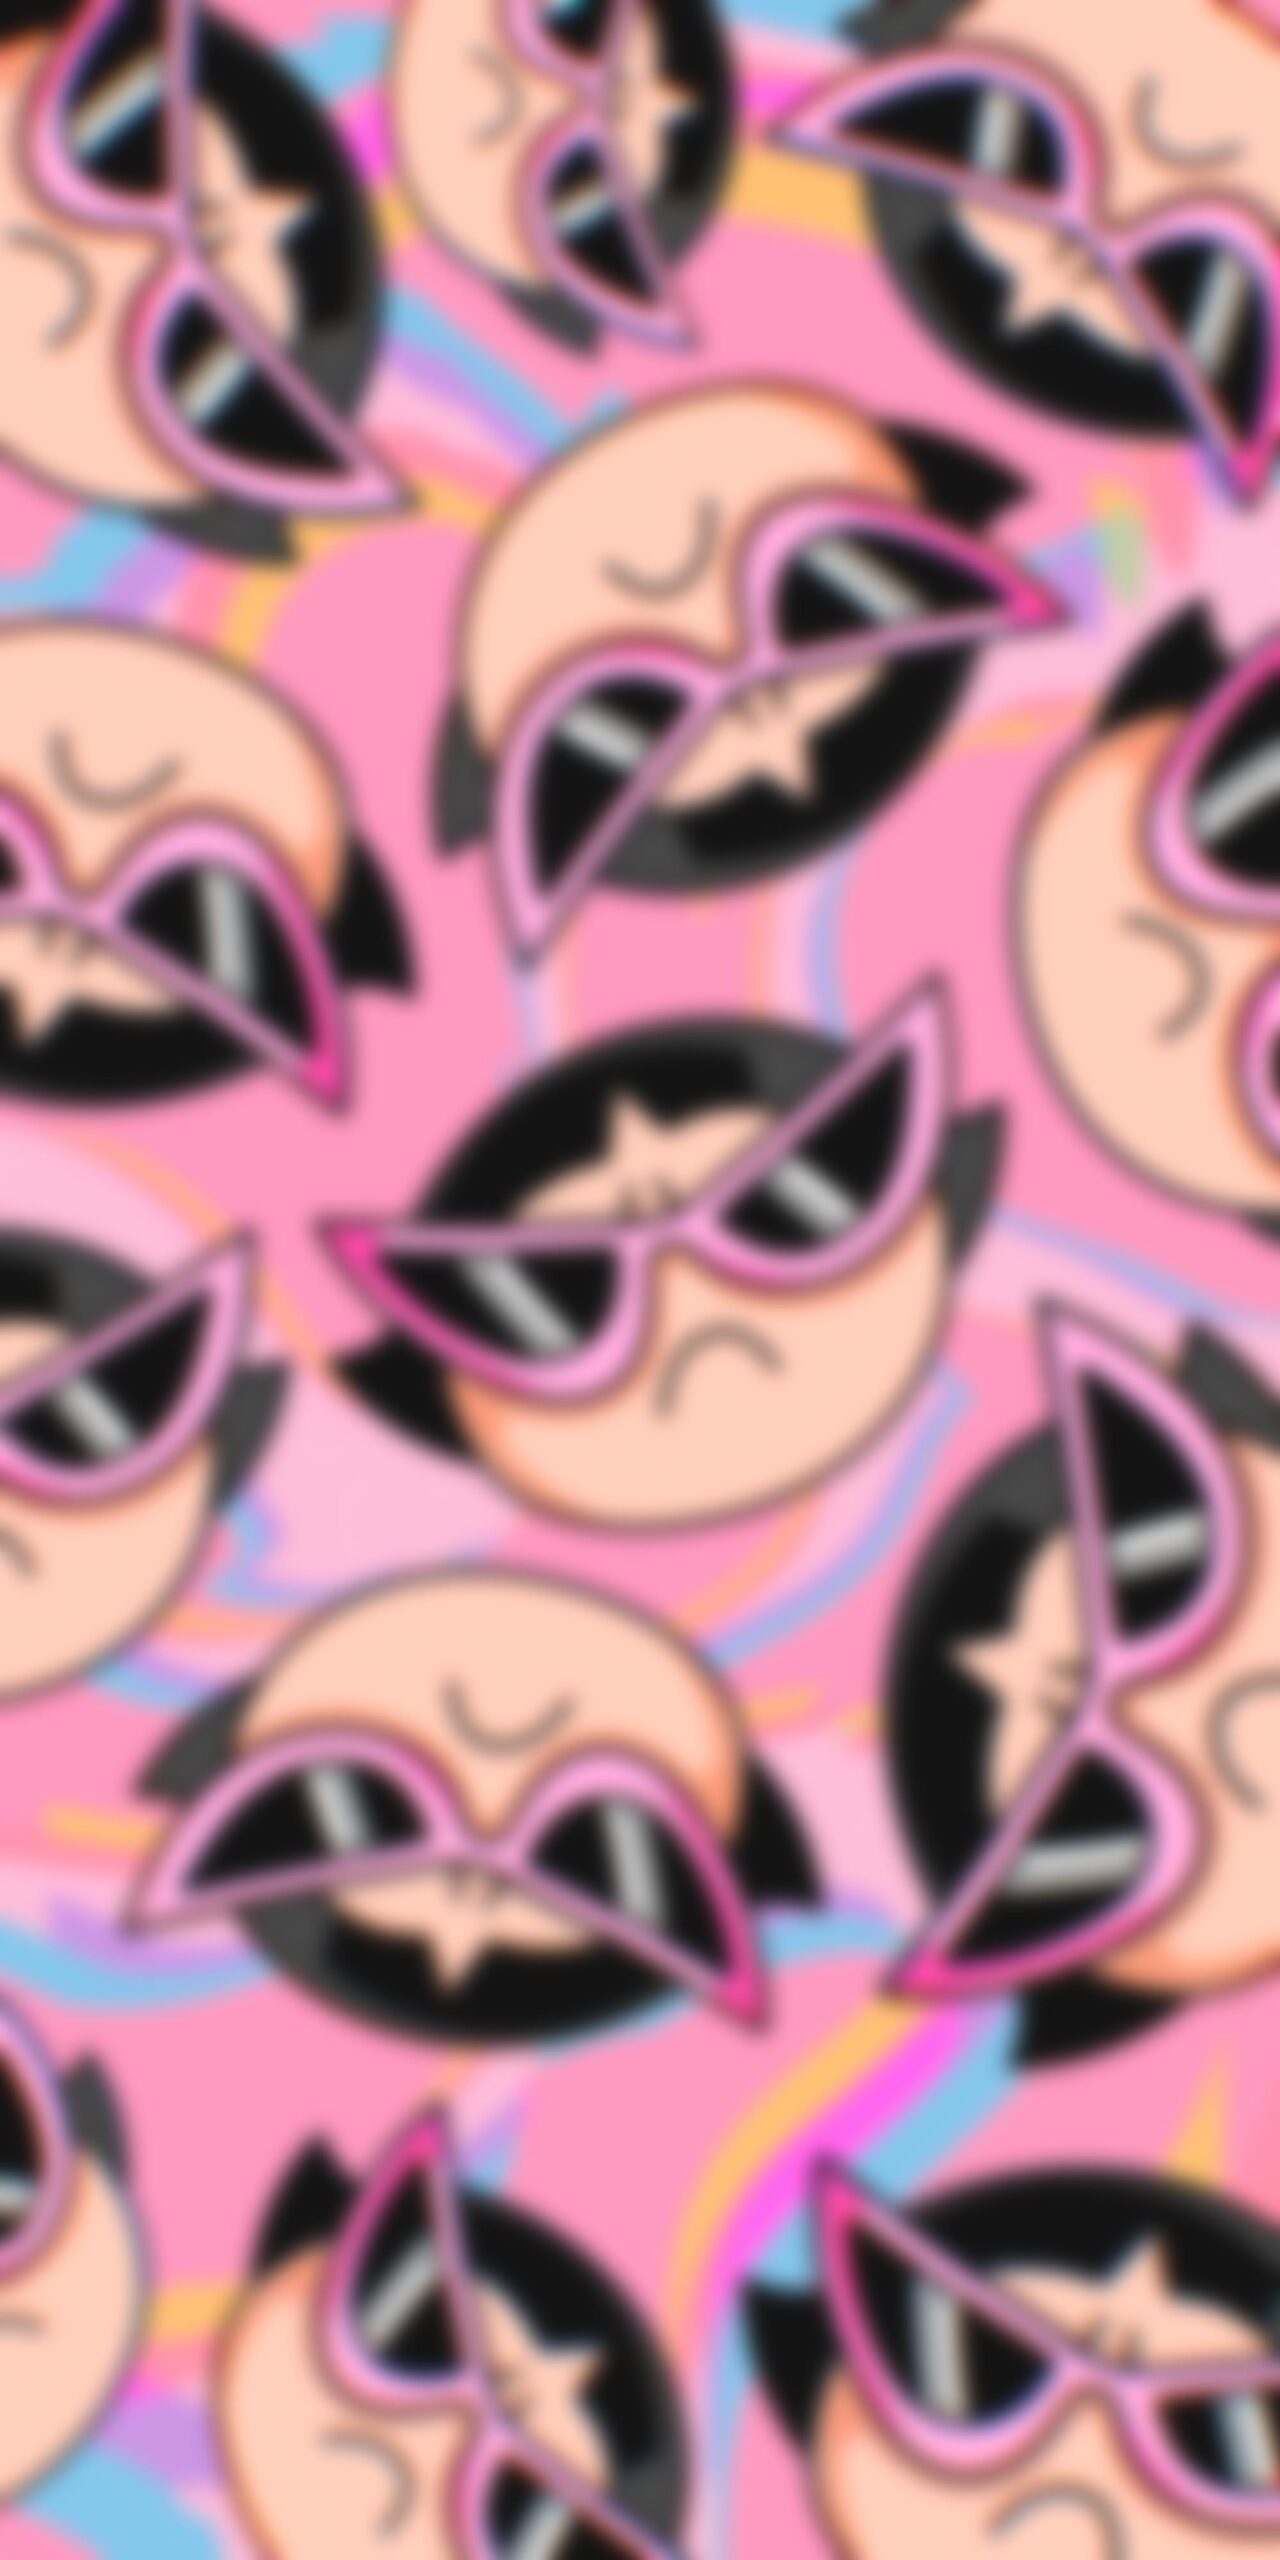 powerpuff girls buttercup cat eye sunglasses pink blur wallpaper